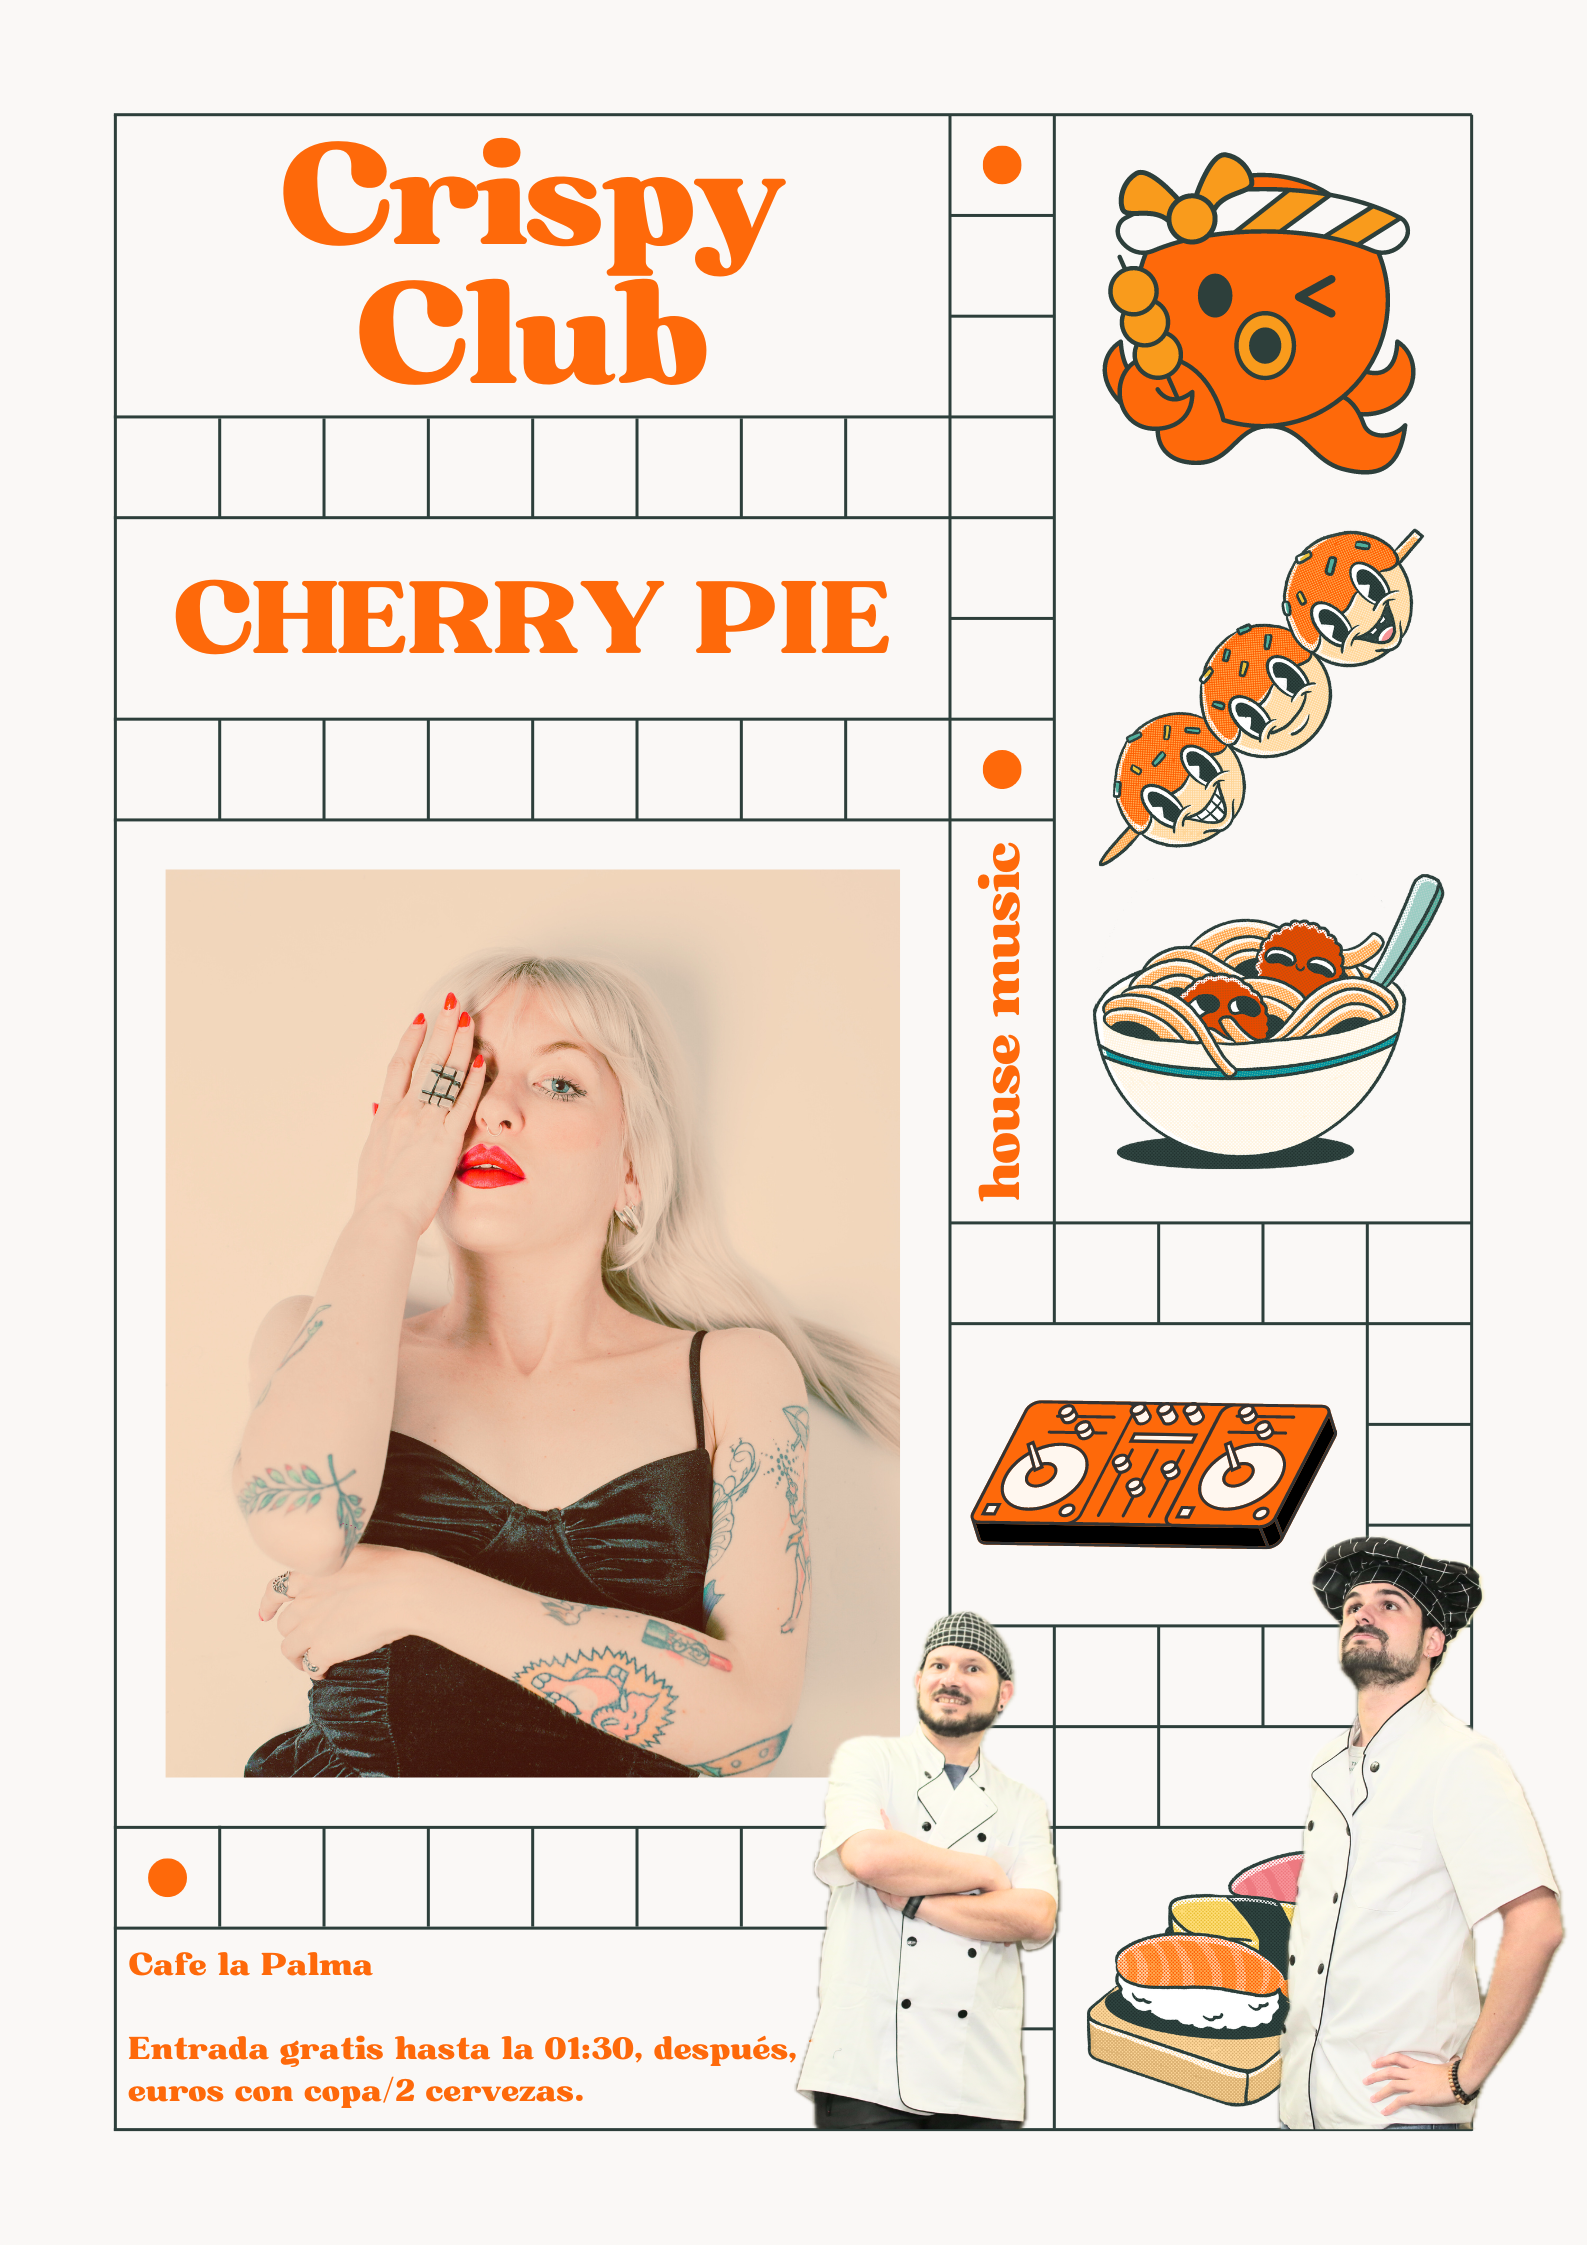 Crispy Club: Cherry Pie - Página frontal